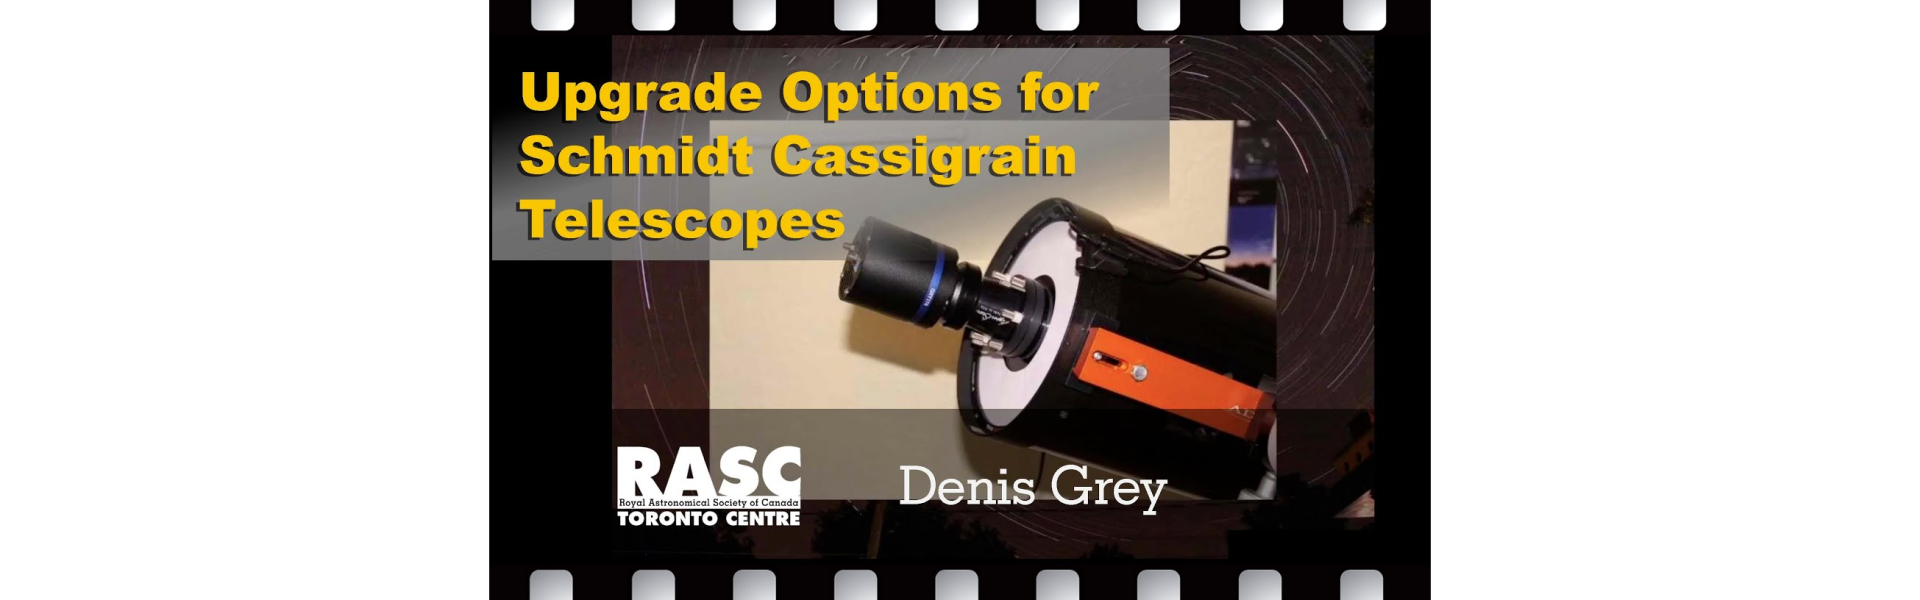 Upgrade Options for Schmidt Cassegrain Telescopes